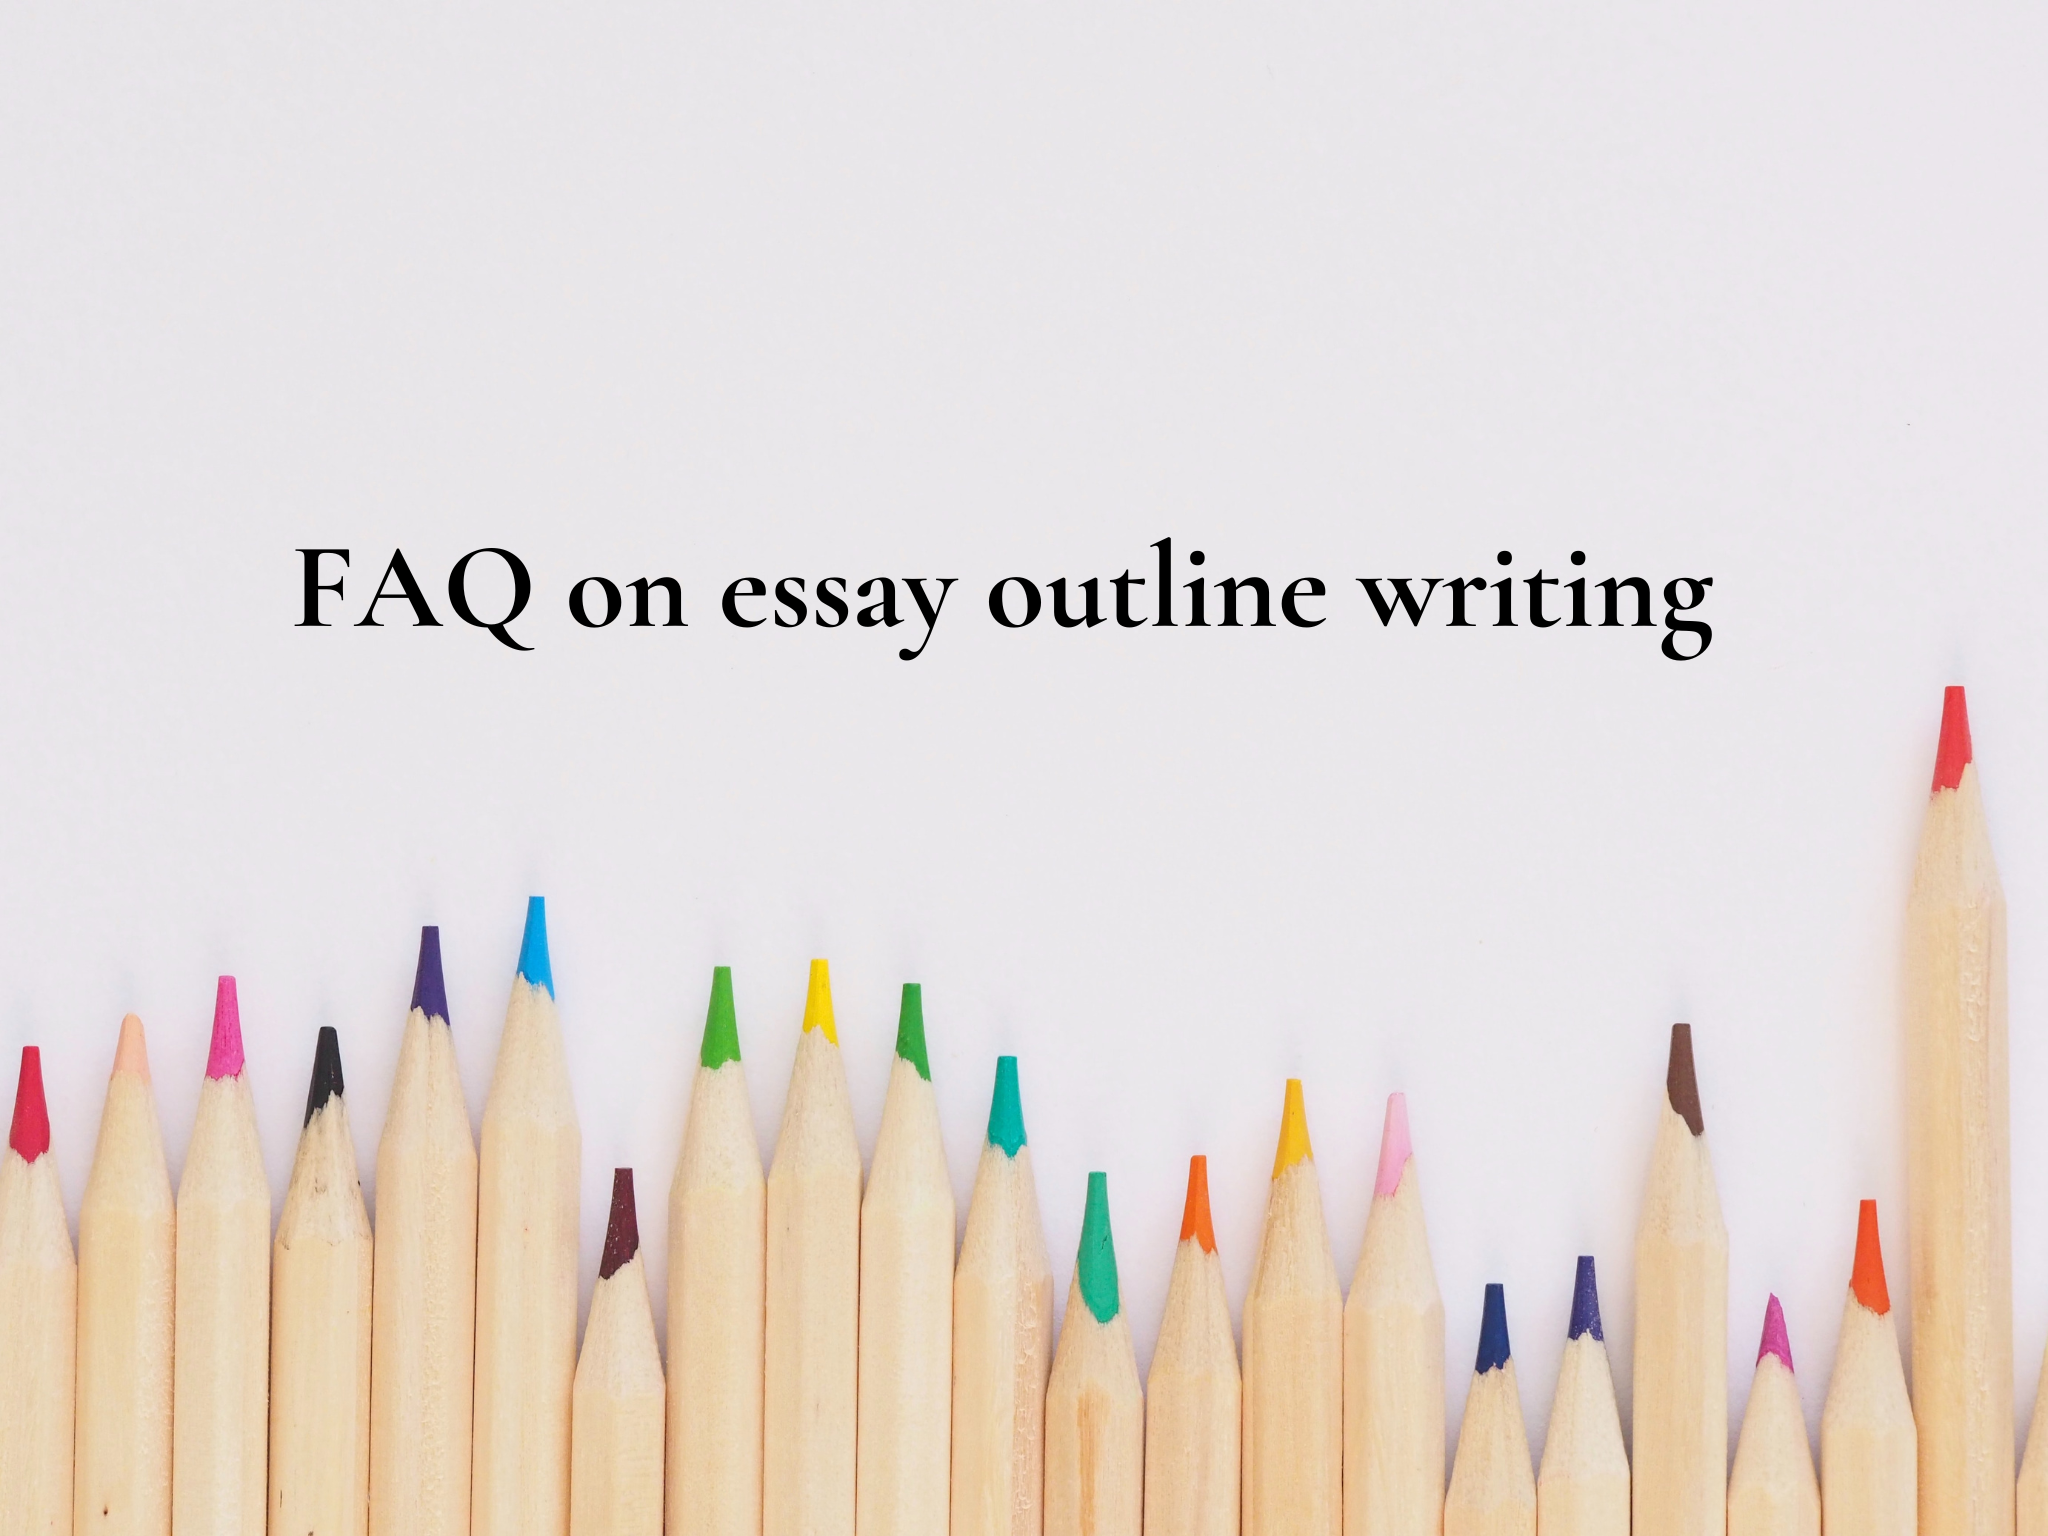 Essay Outline Writing FAQ